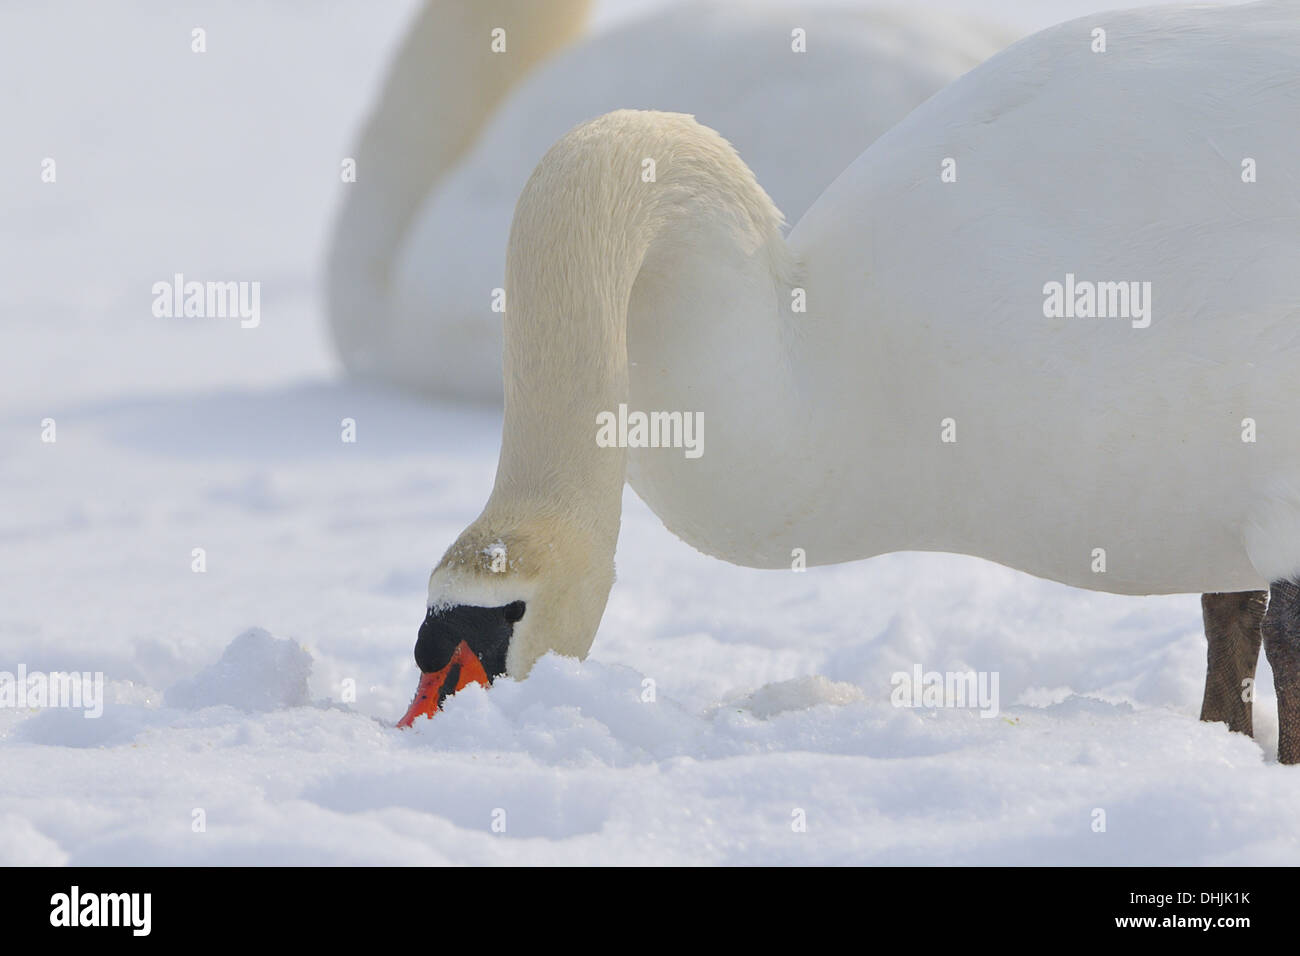 Mute swan Stock Photo